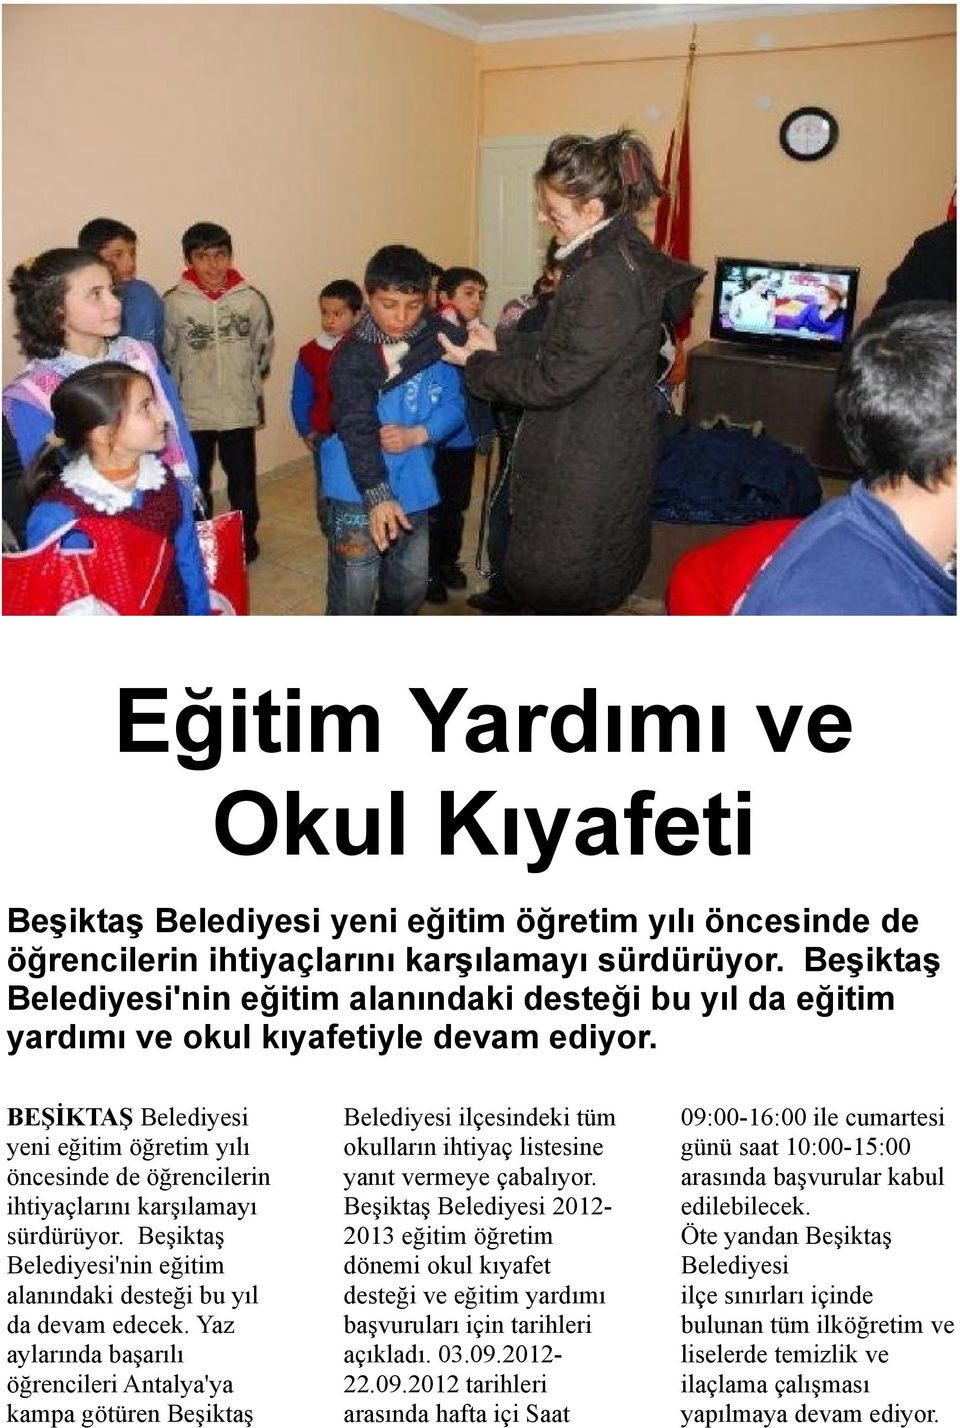 BEŞİKTAŞ Belediyesi yeni eğitim öğretim yılı öncesinde de öğrencilerin ihtiyaçlarını karşılamayı sürdürüyor. Beşiktaş Belediyesi'nin eğitim alanındaki desteği bu yıl da devam edecek.